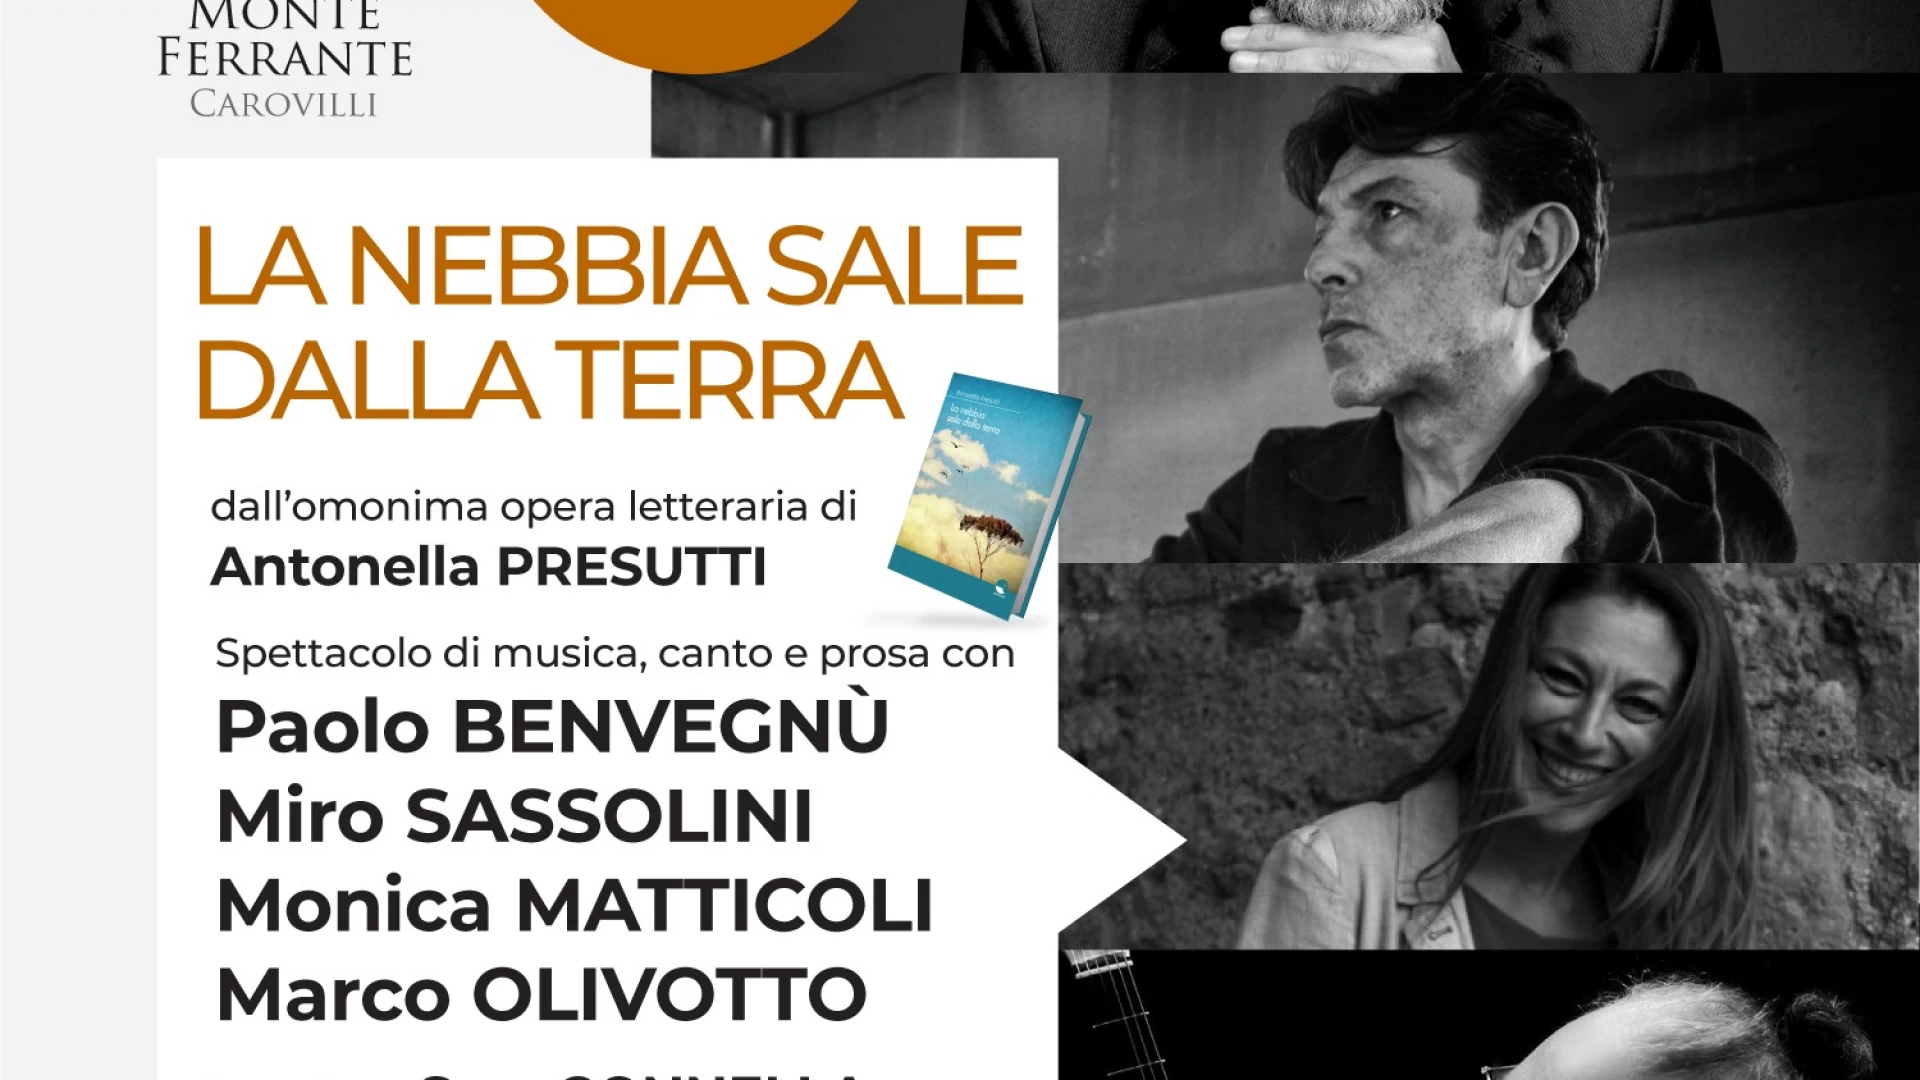 Carovilli: Paolo Benvegnù, Miro Sassolini e Monica Matticoli presentano “La Nebbia sale dalla terra” con Marco Olivotto.